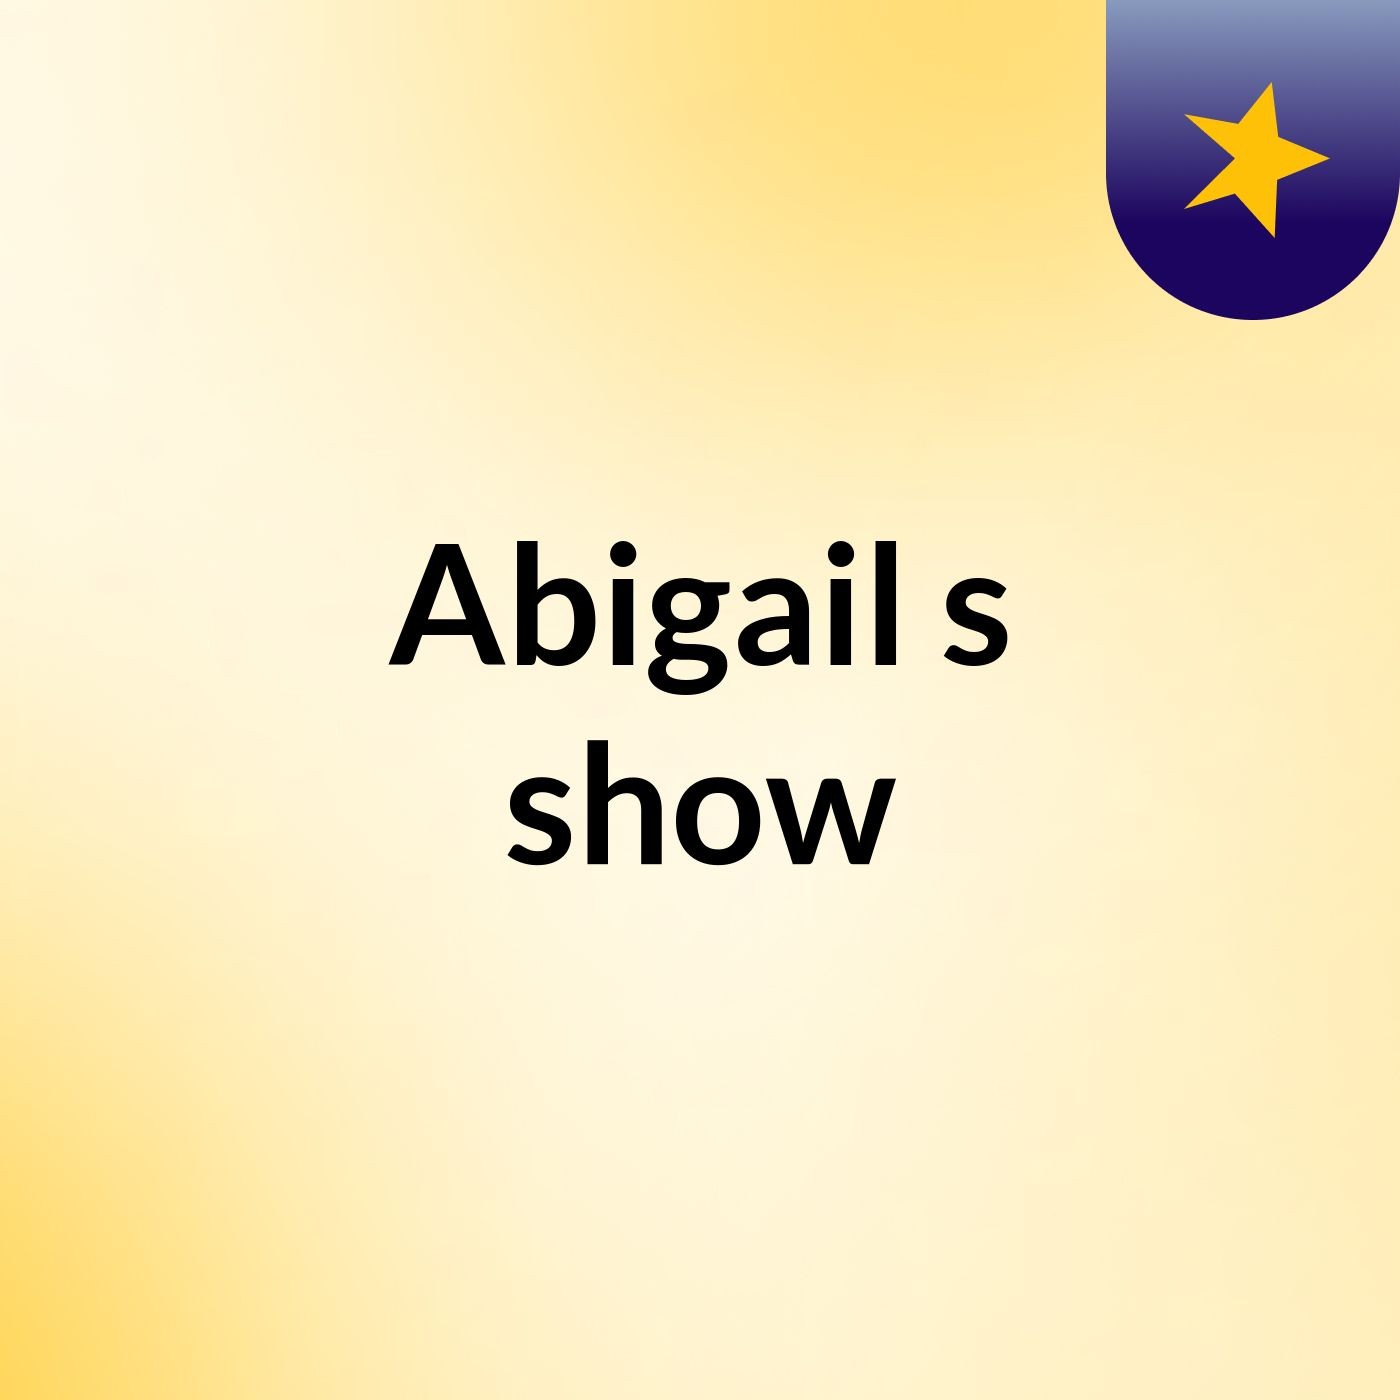 Abigail's show